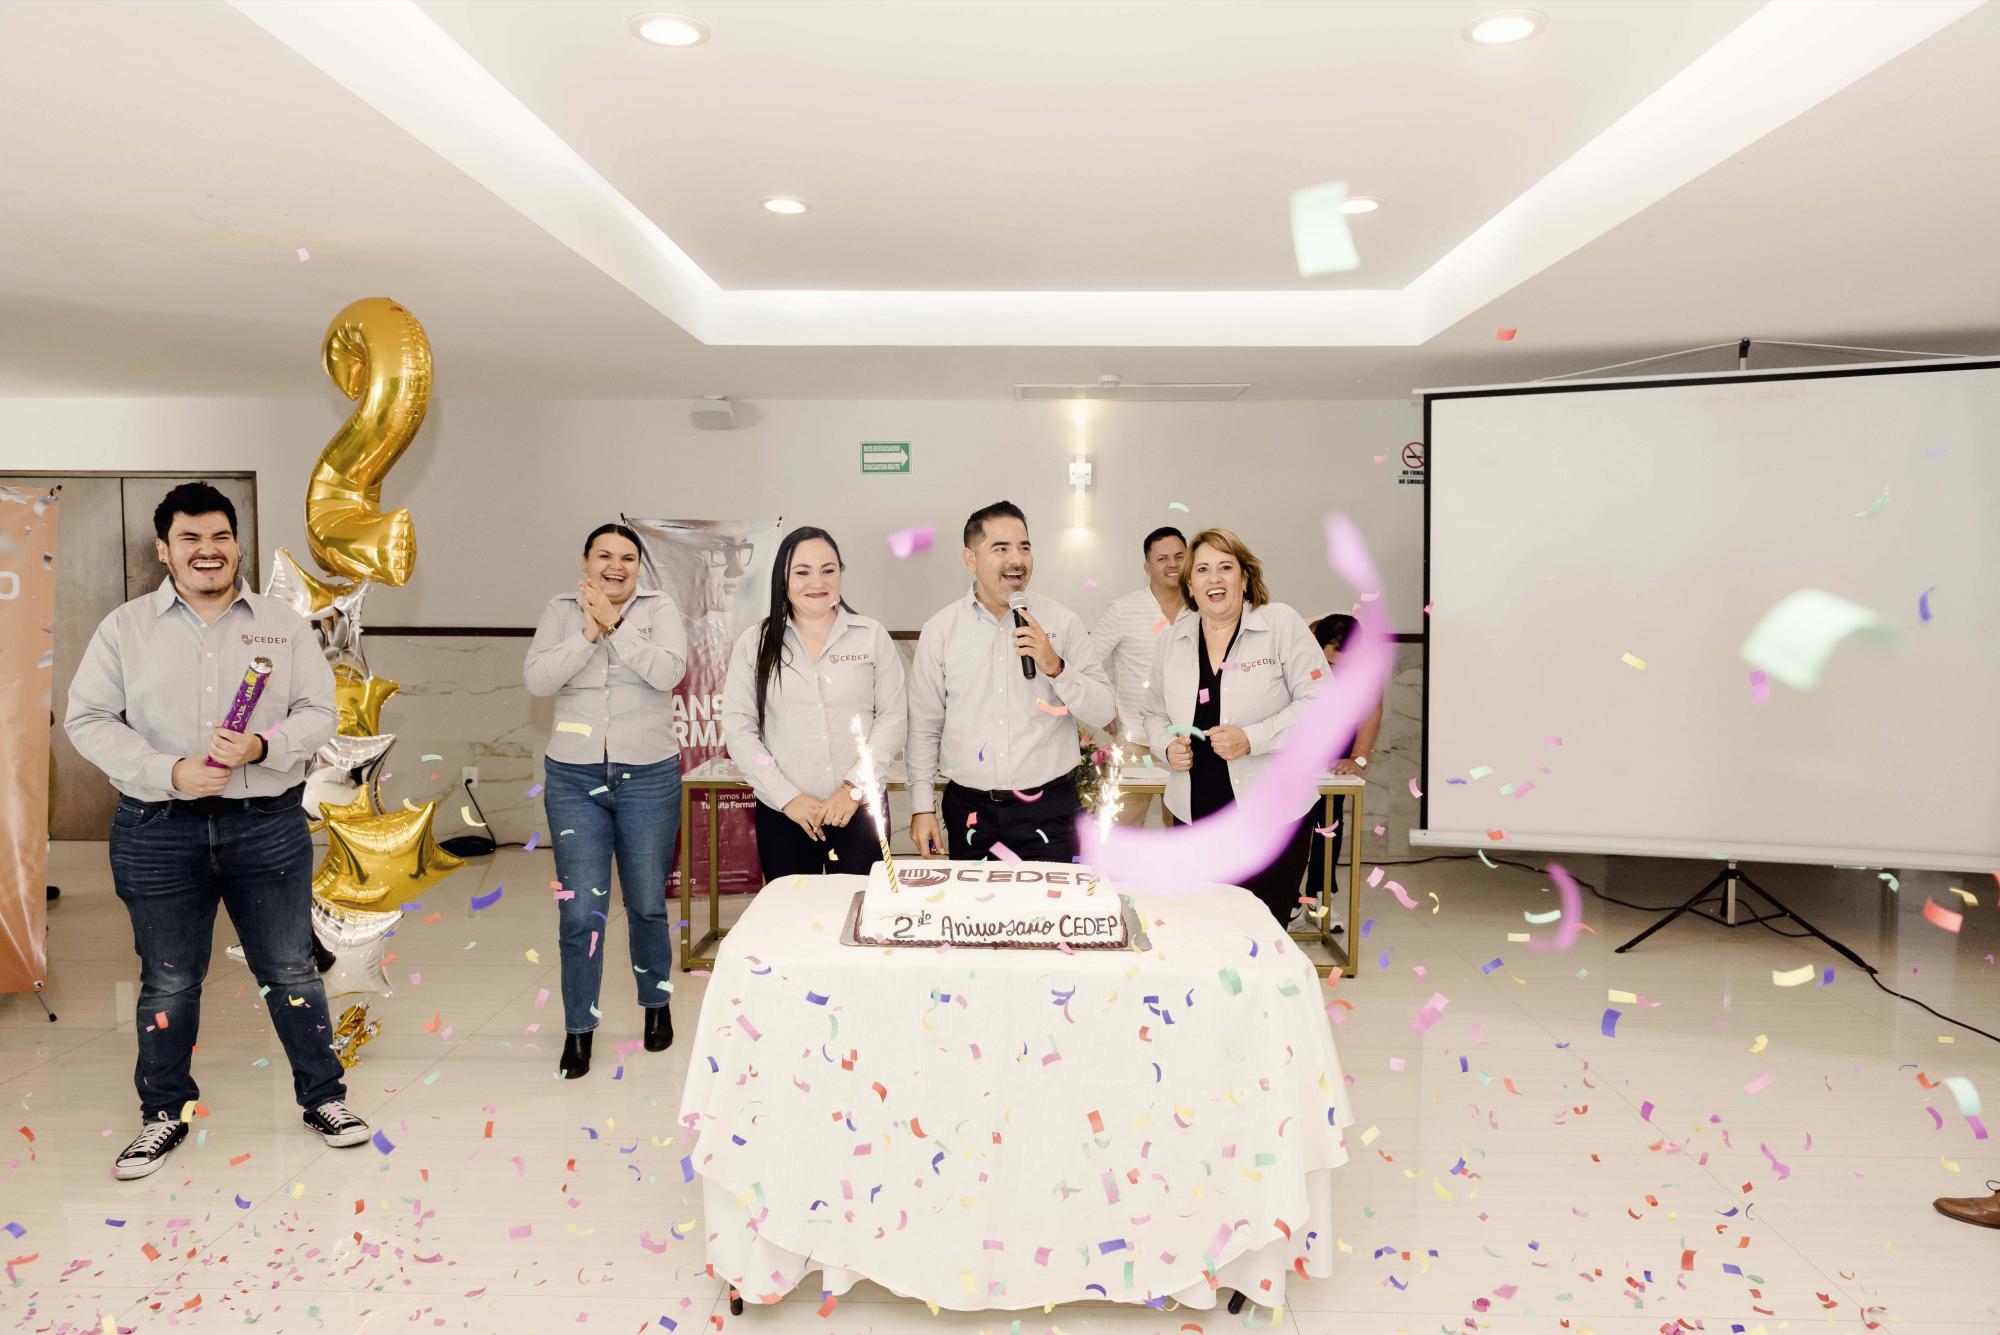 $!Miembros del gremio, encabezados por el profesor Horacio Álvarez Soto, director general de Cedep, festejaron su segundo aniversario.